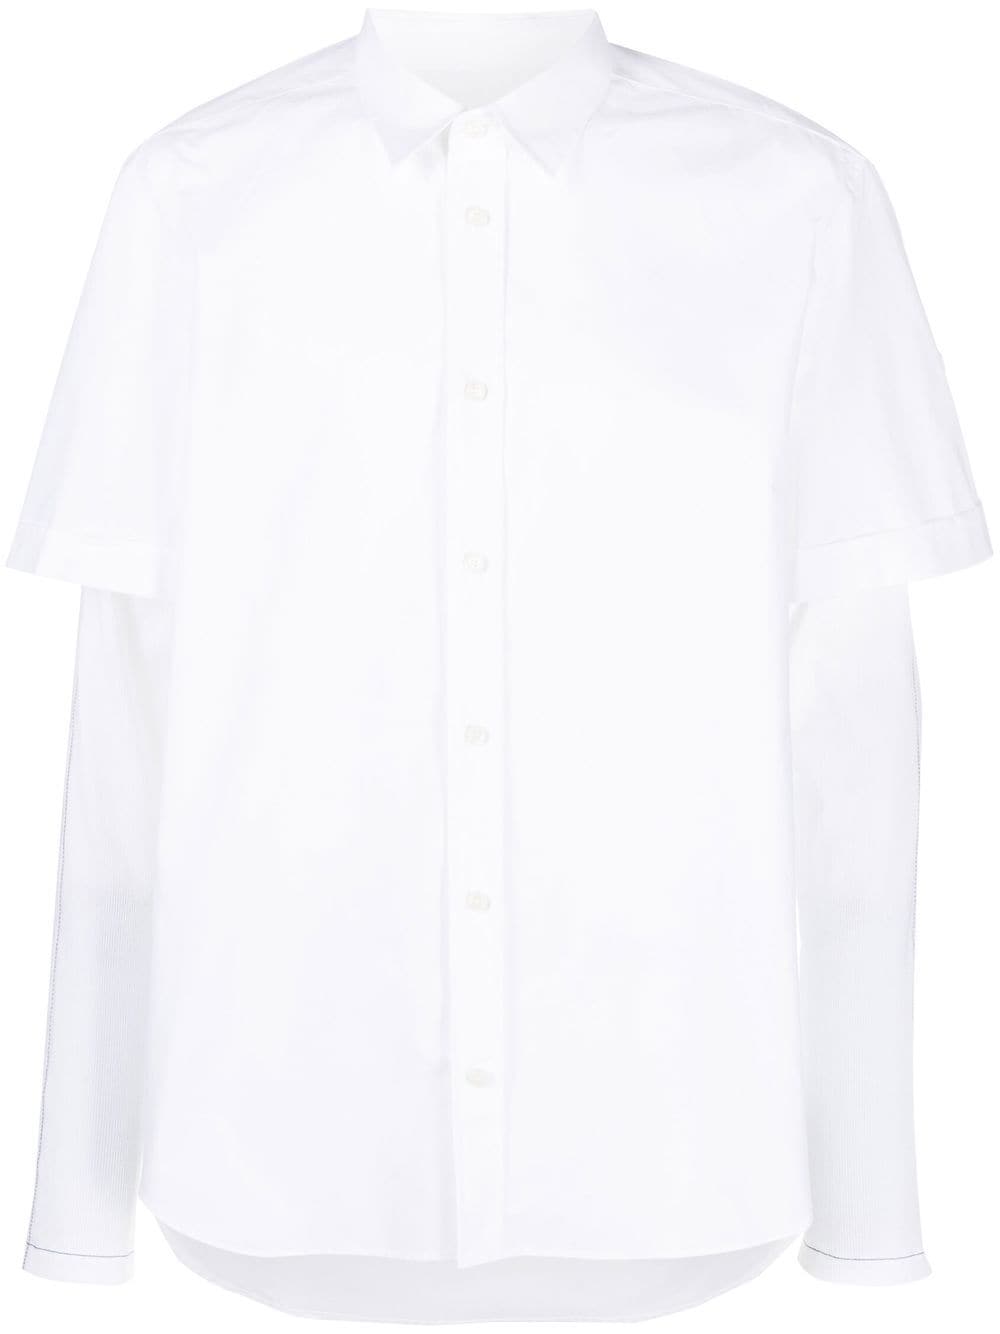 Diesel S-Marley-A layered shirt - White von Diesel